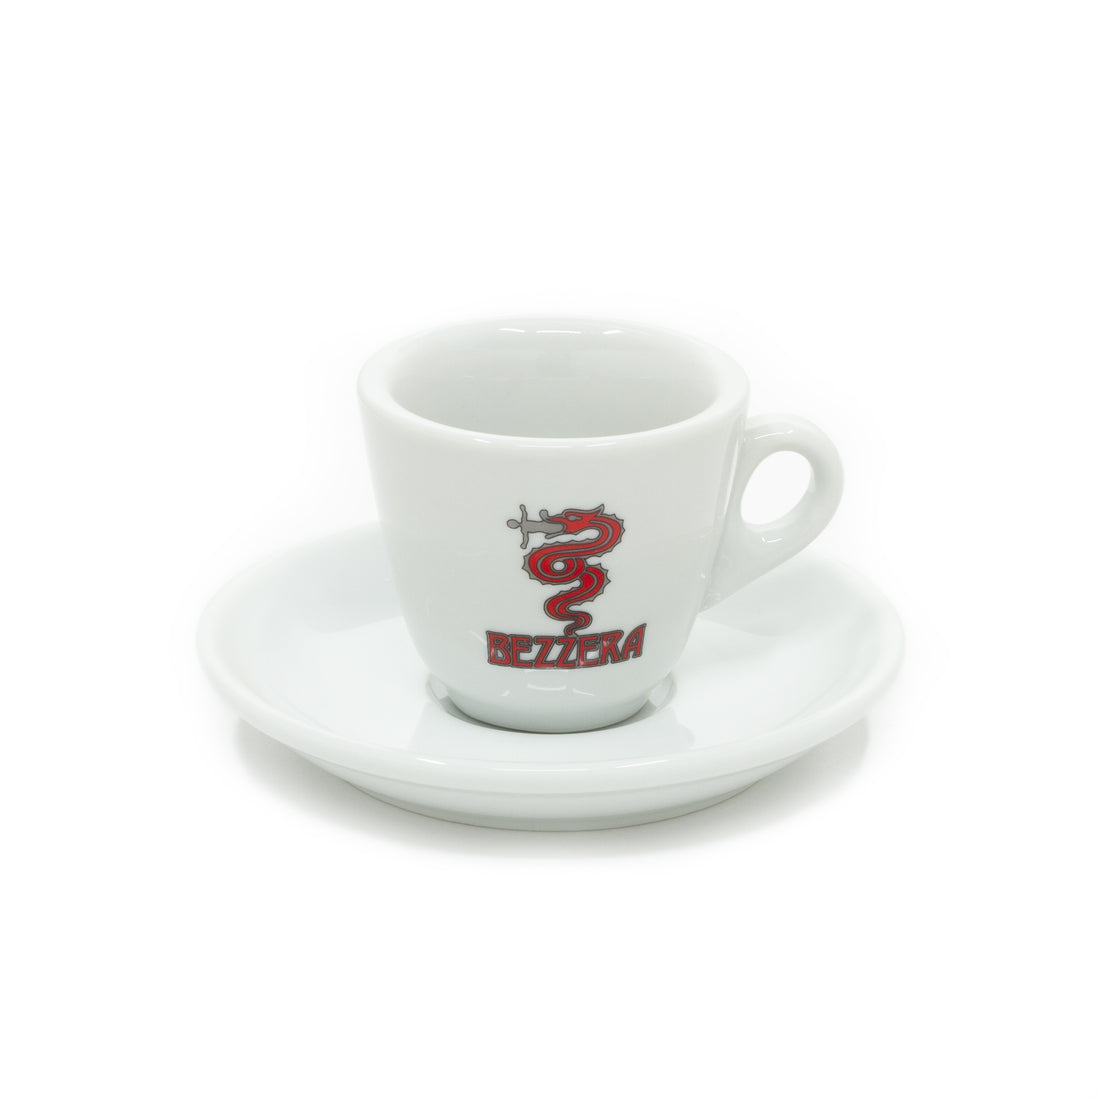 Bezzera Espresso Cup and Saucer Set